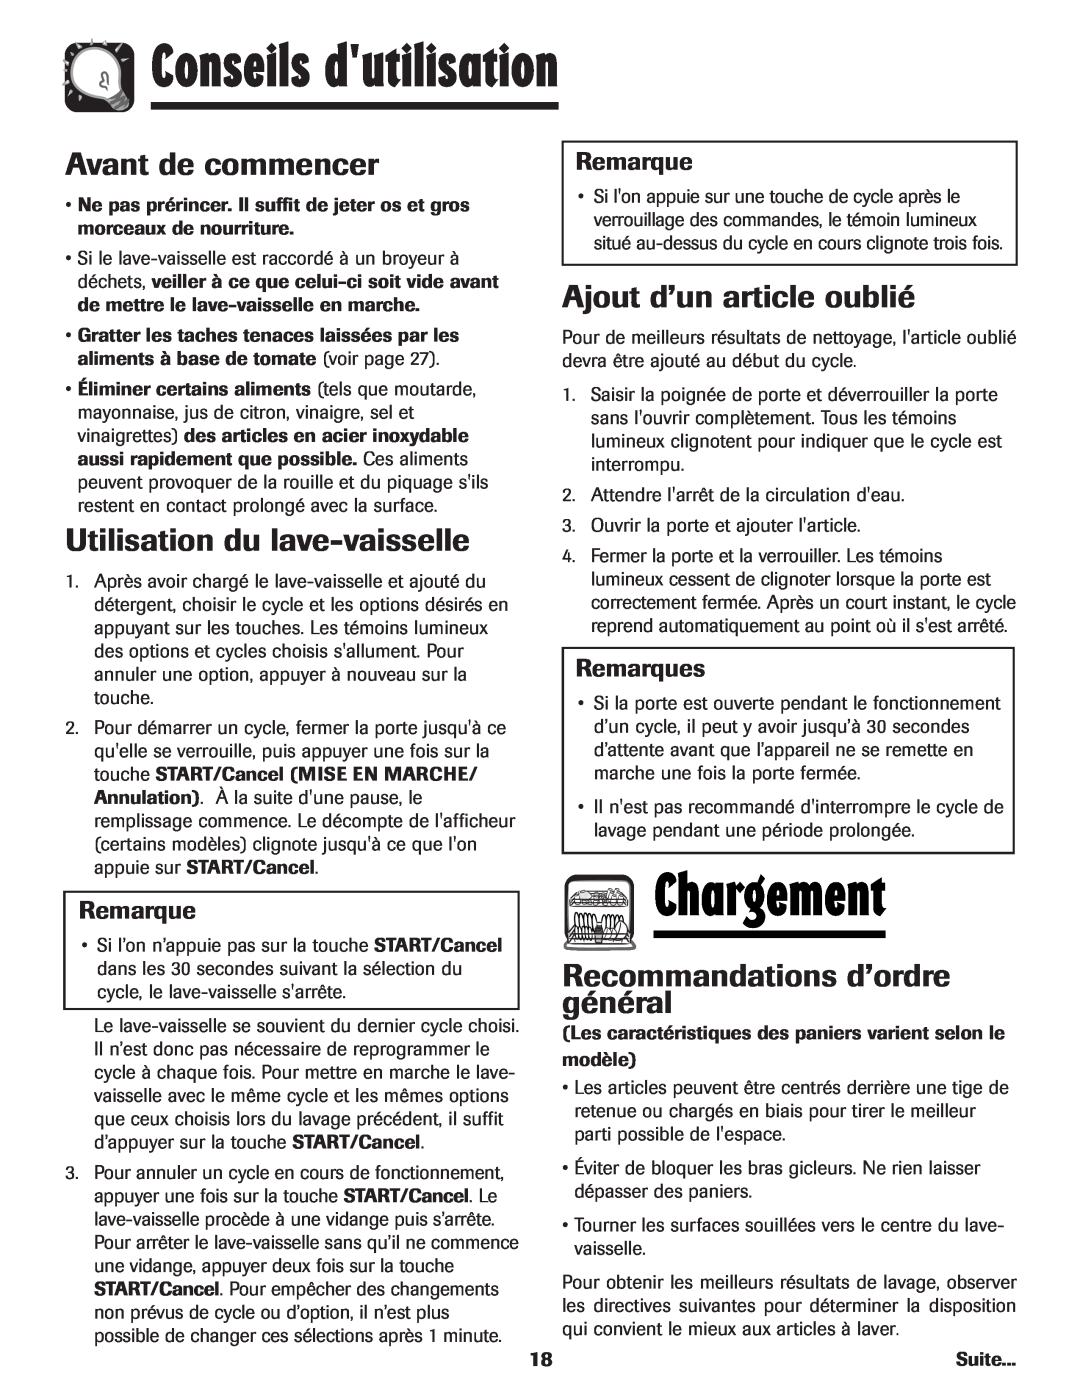 Maytag MDB-5 warranty Conseils dutilisation, Chargement, Avant de commencer, Utilisation du lave-vaisselle, Remarques 